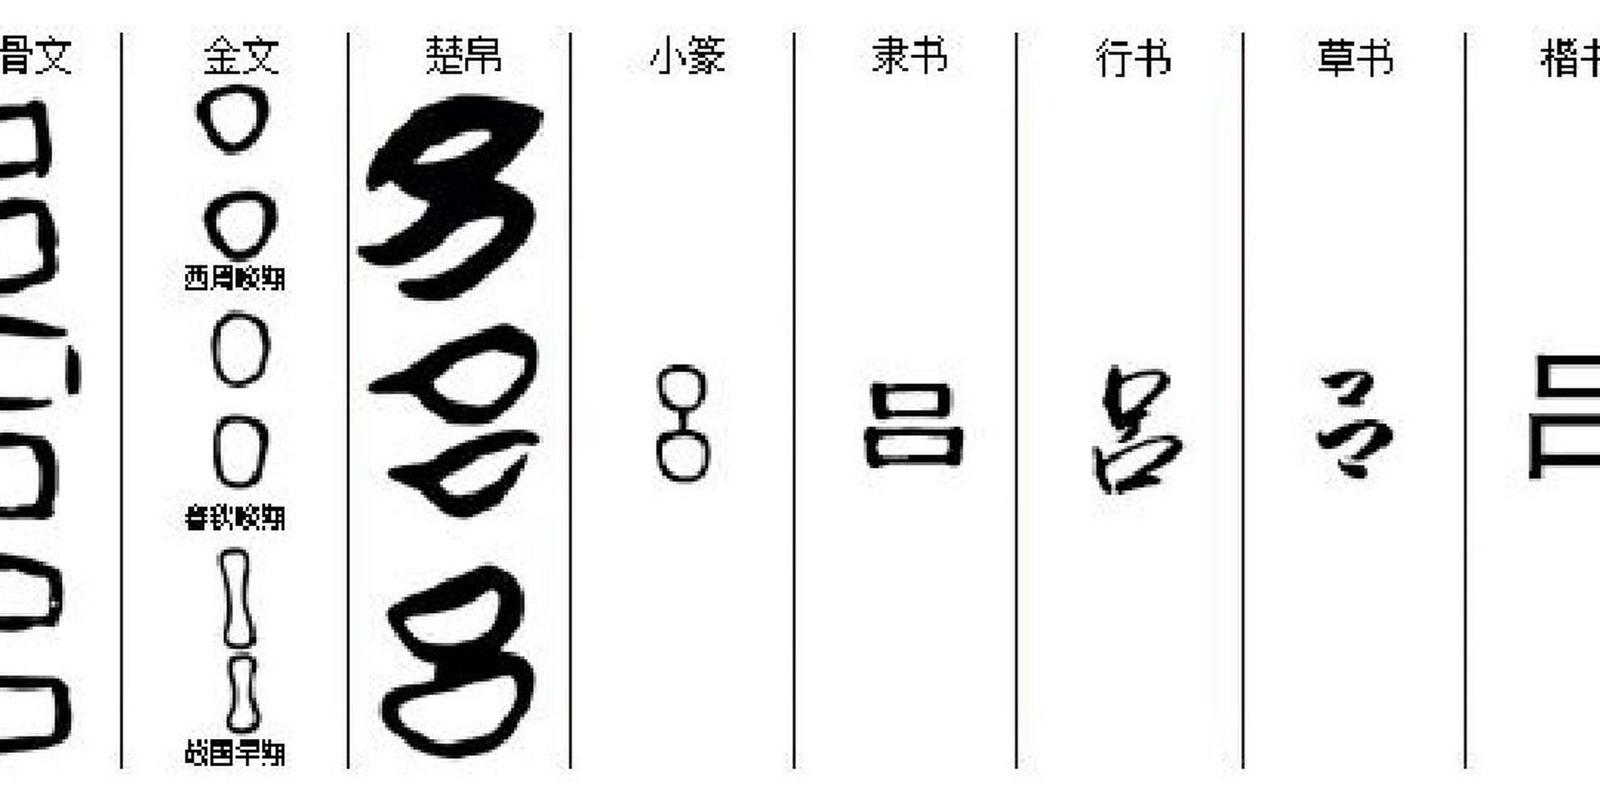 吕字识读 "吕"lǚ,象形字,本字写作"呂","吕"字最早见于商代甲骨文,除